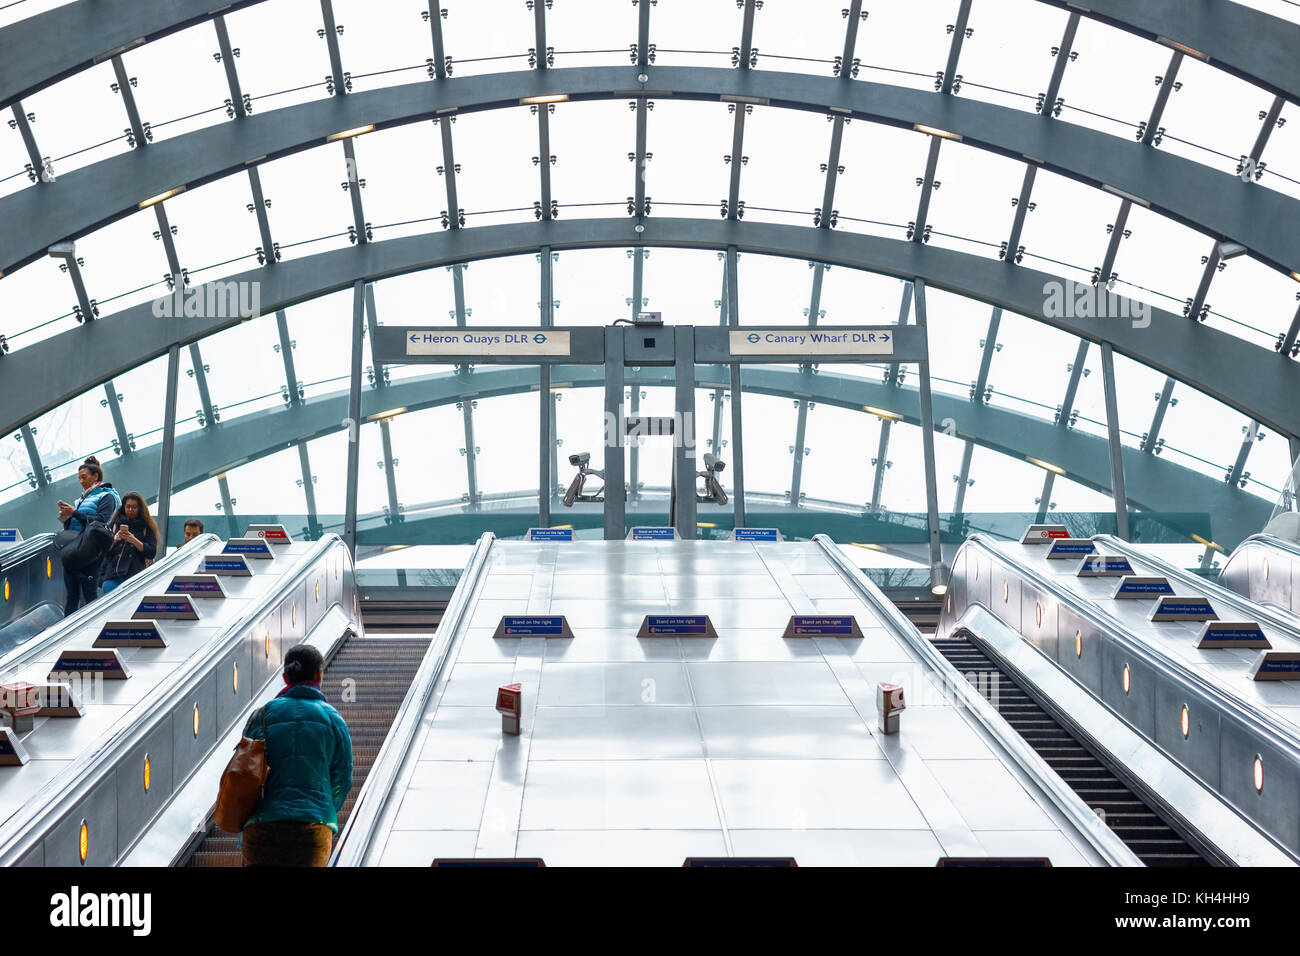 Londres, Royaume-Uni - 24 novembre 2017 - entrée de la station de métro canary wharf géométrique avec plafond de verre Banque D'Images